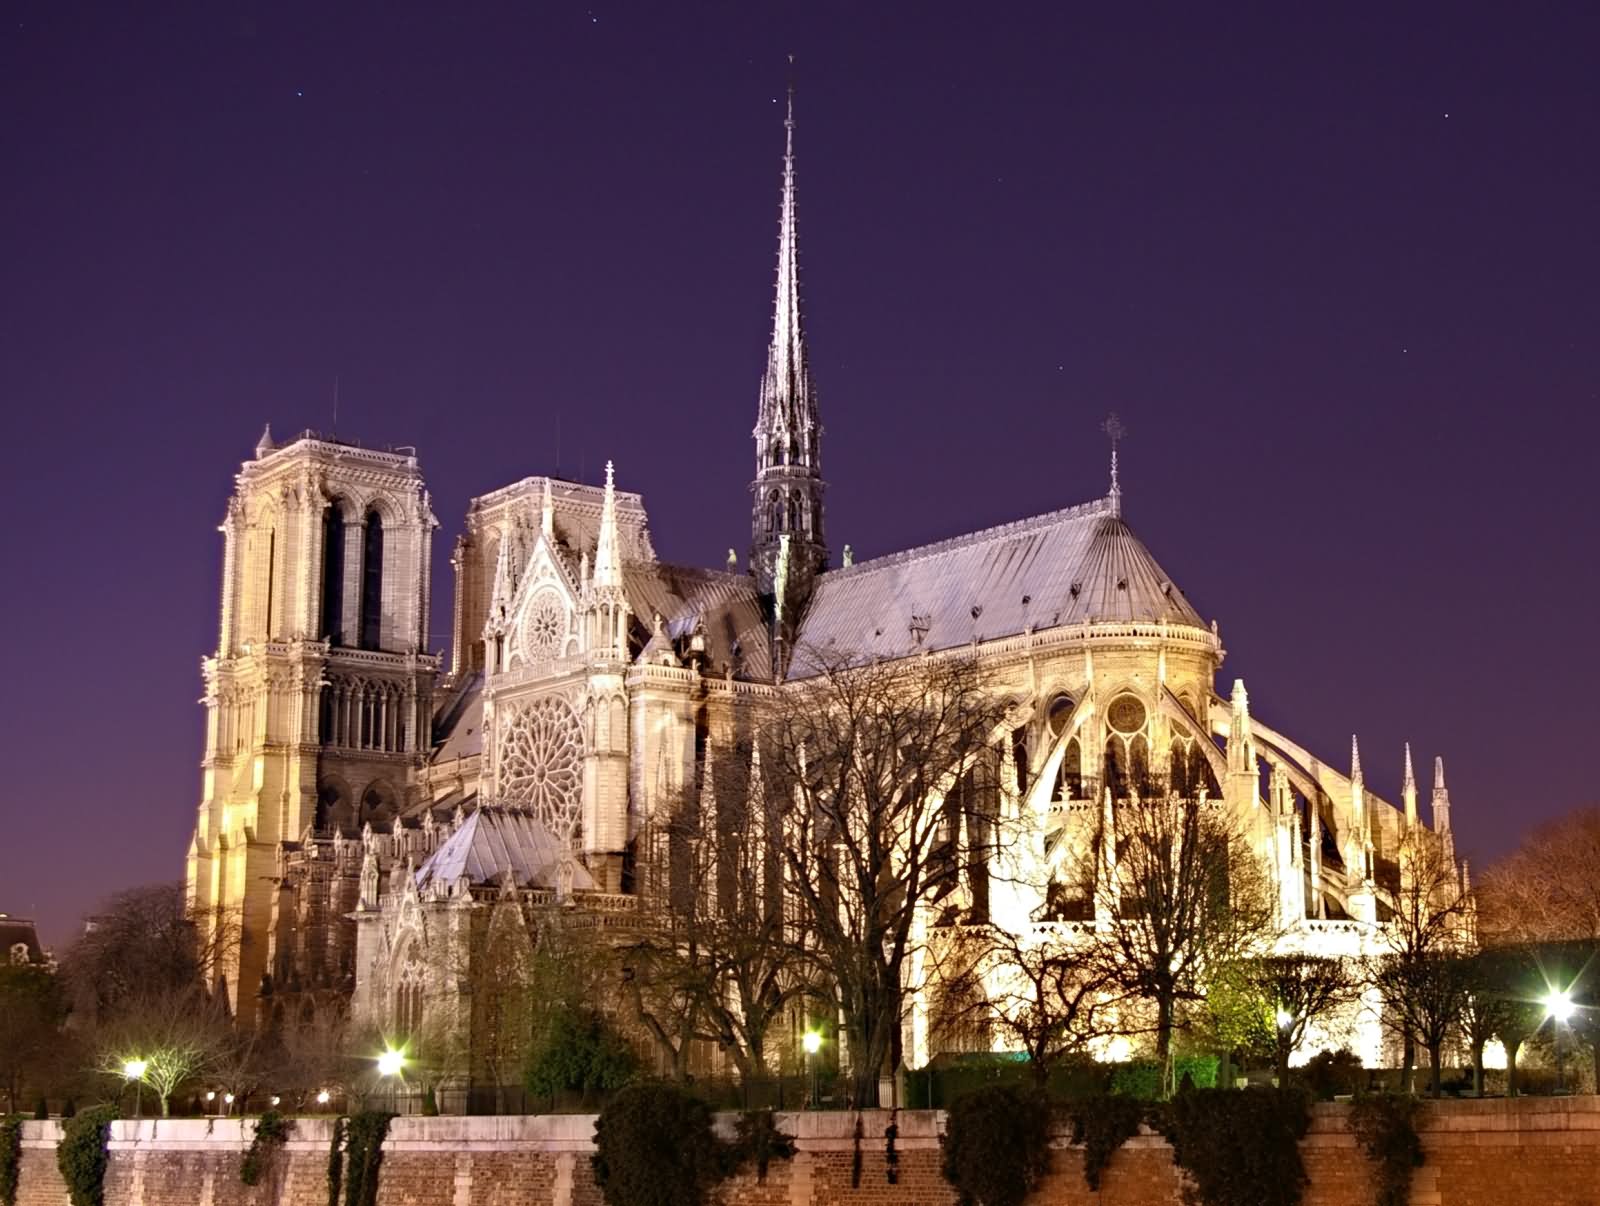 Notre Dame de Paris Picture At Night Time